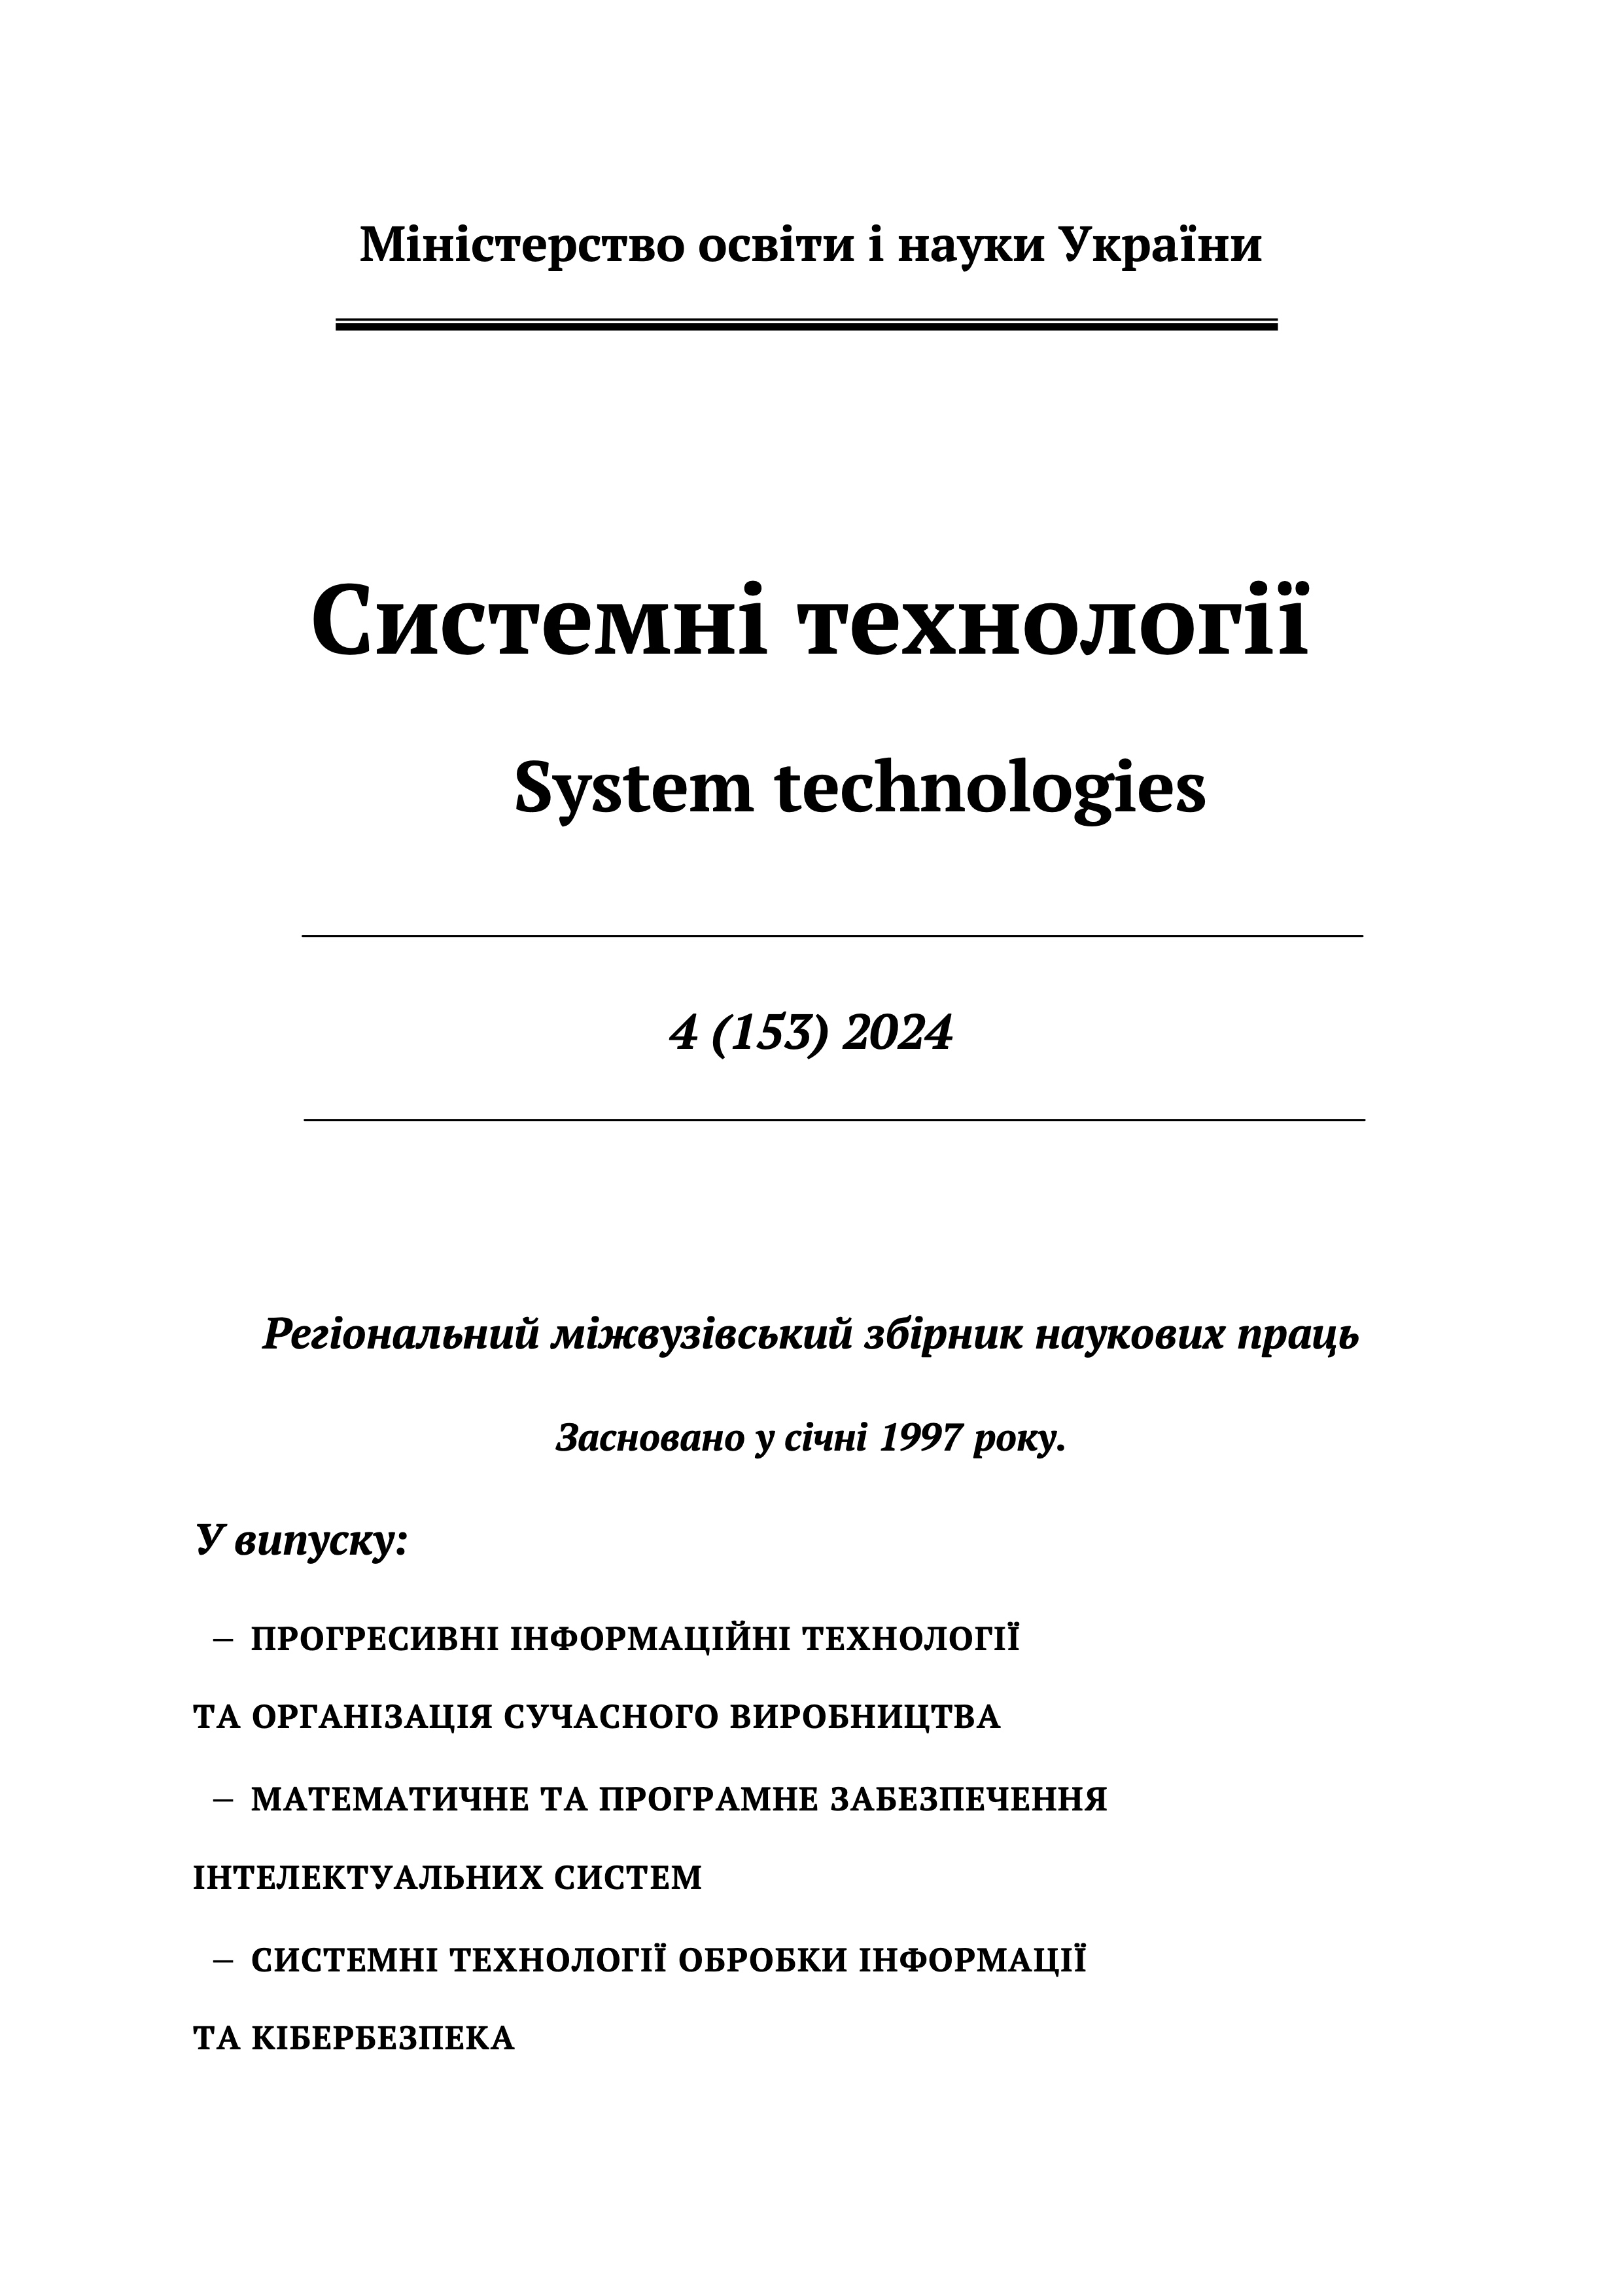 					Дивитися Том 4 № 153 (2024): Системні технології
				